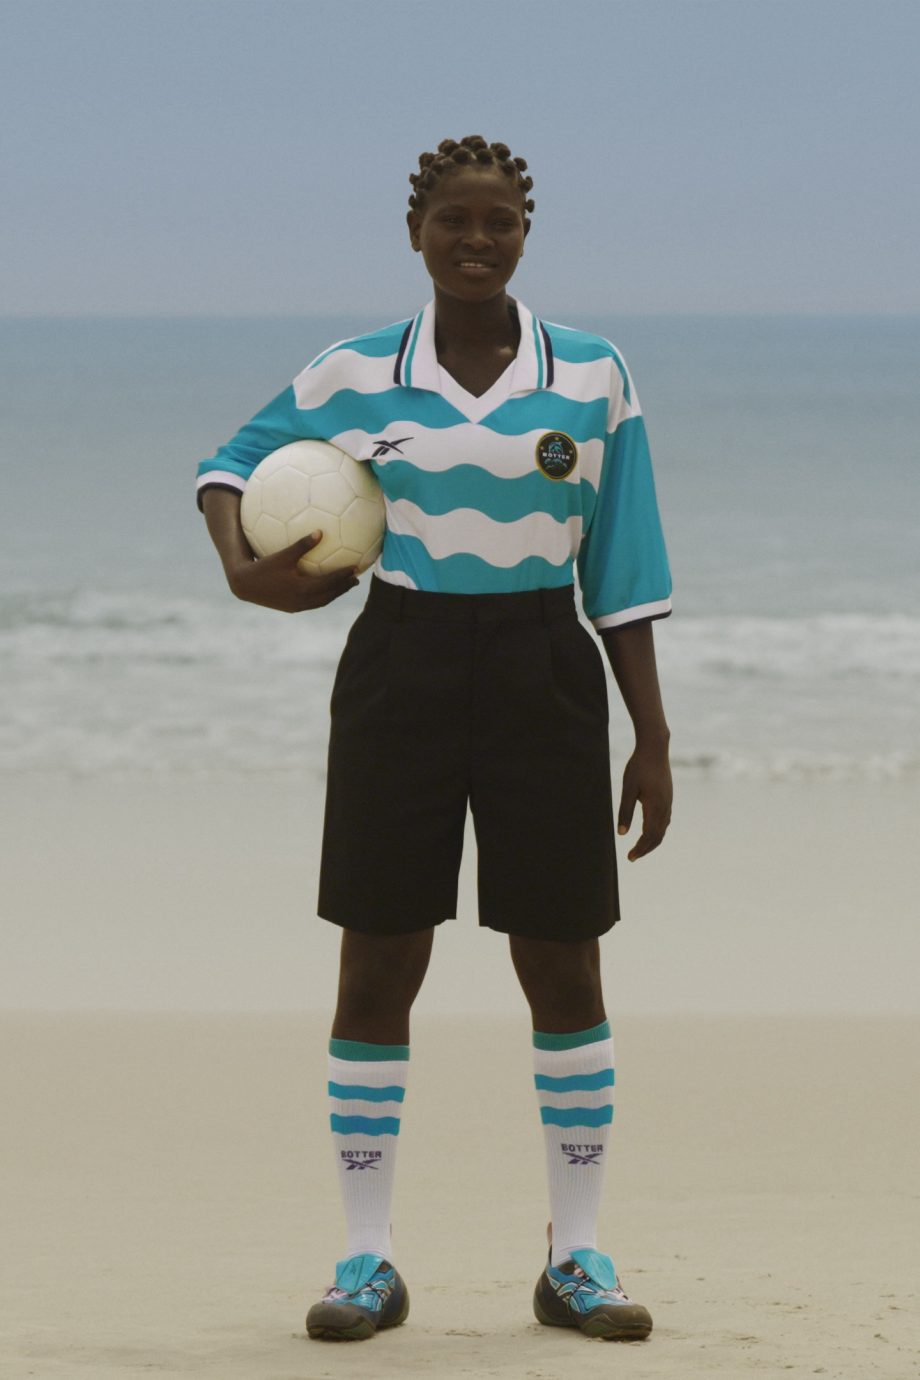 voetbal-meets-caribbean-couture-de-nieuwste-samenwerking-van-botter-en-reebok-ltd-is-nu-verkrijgbaar-295436